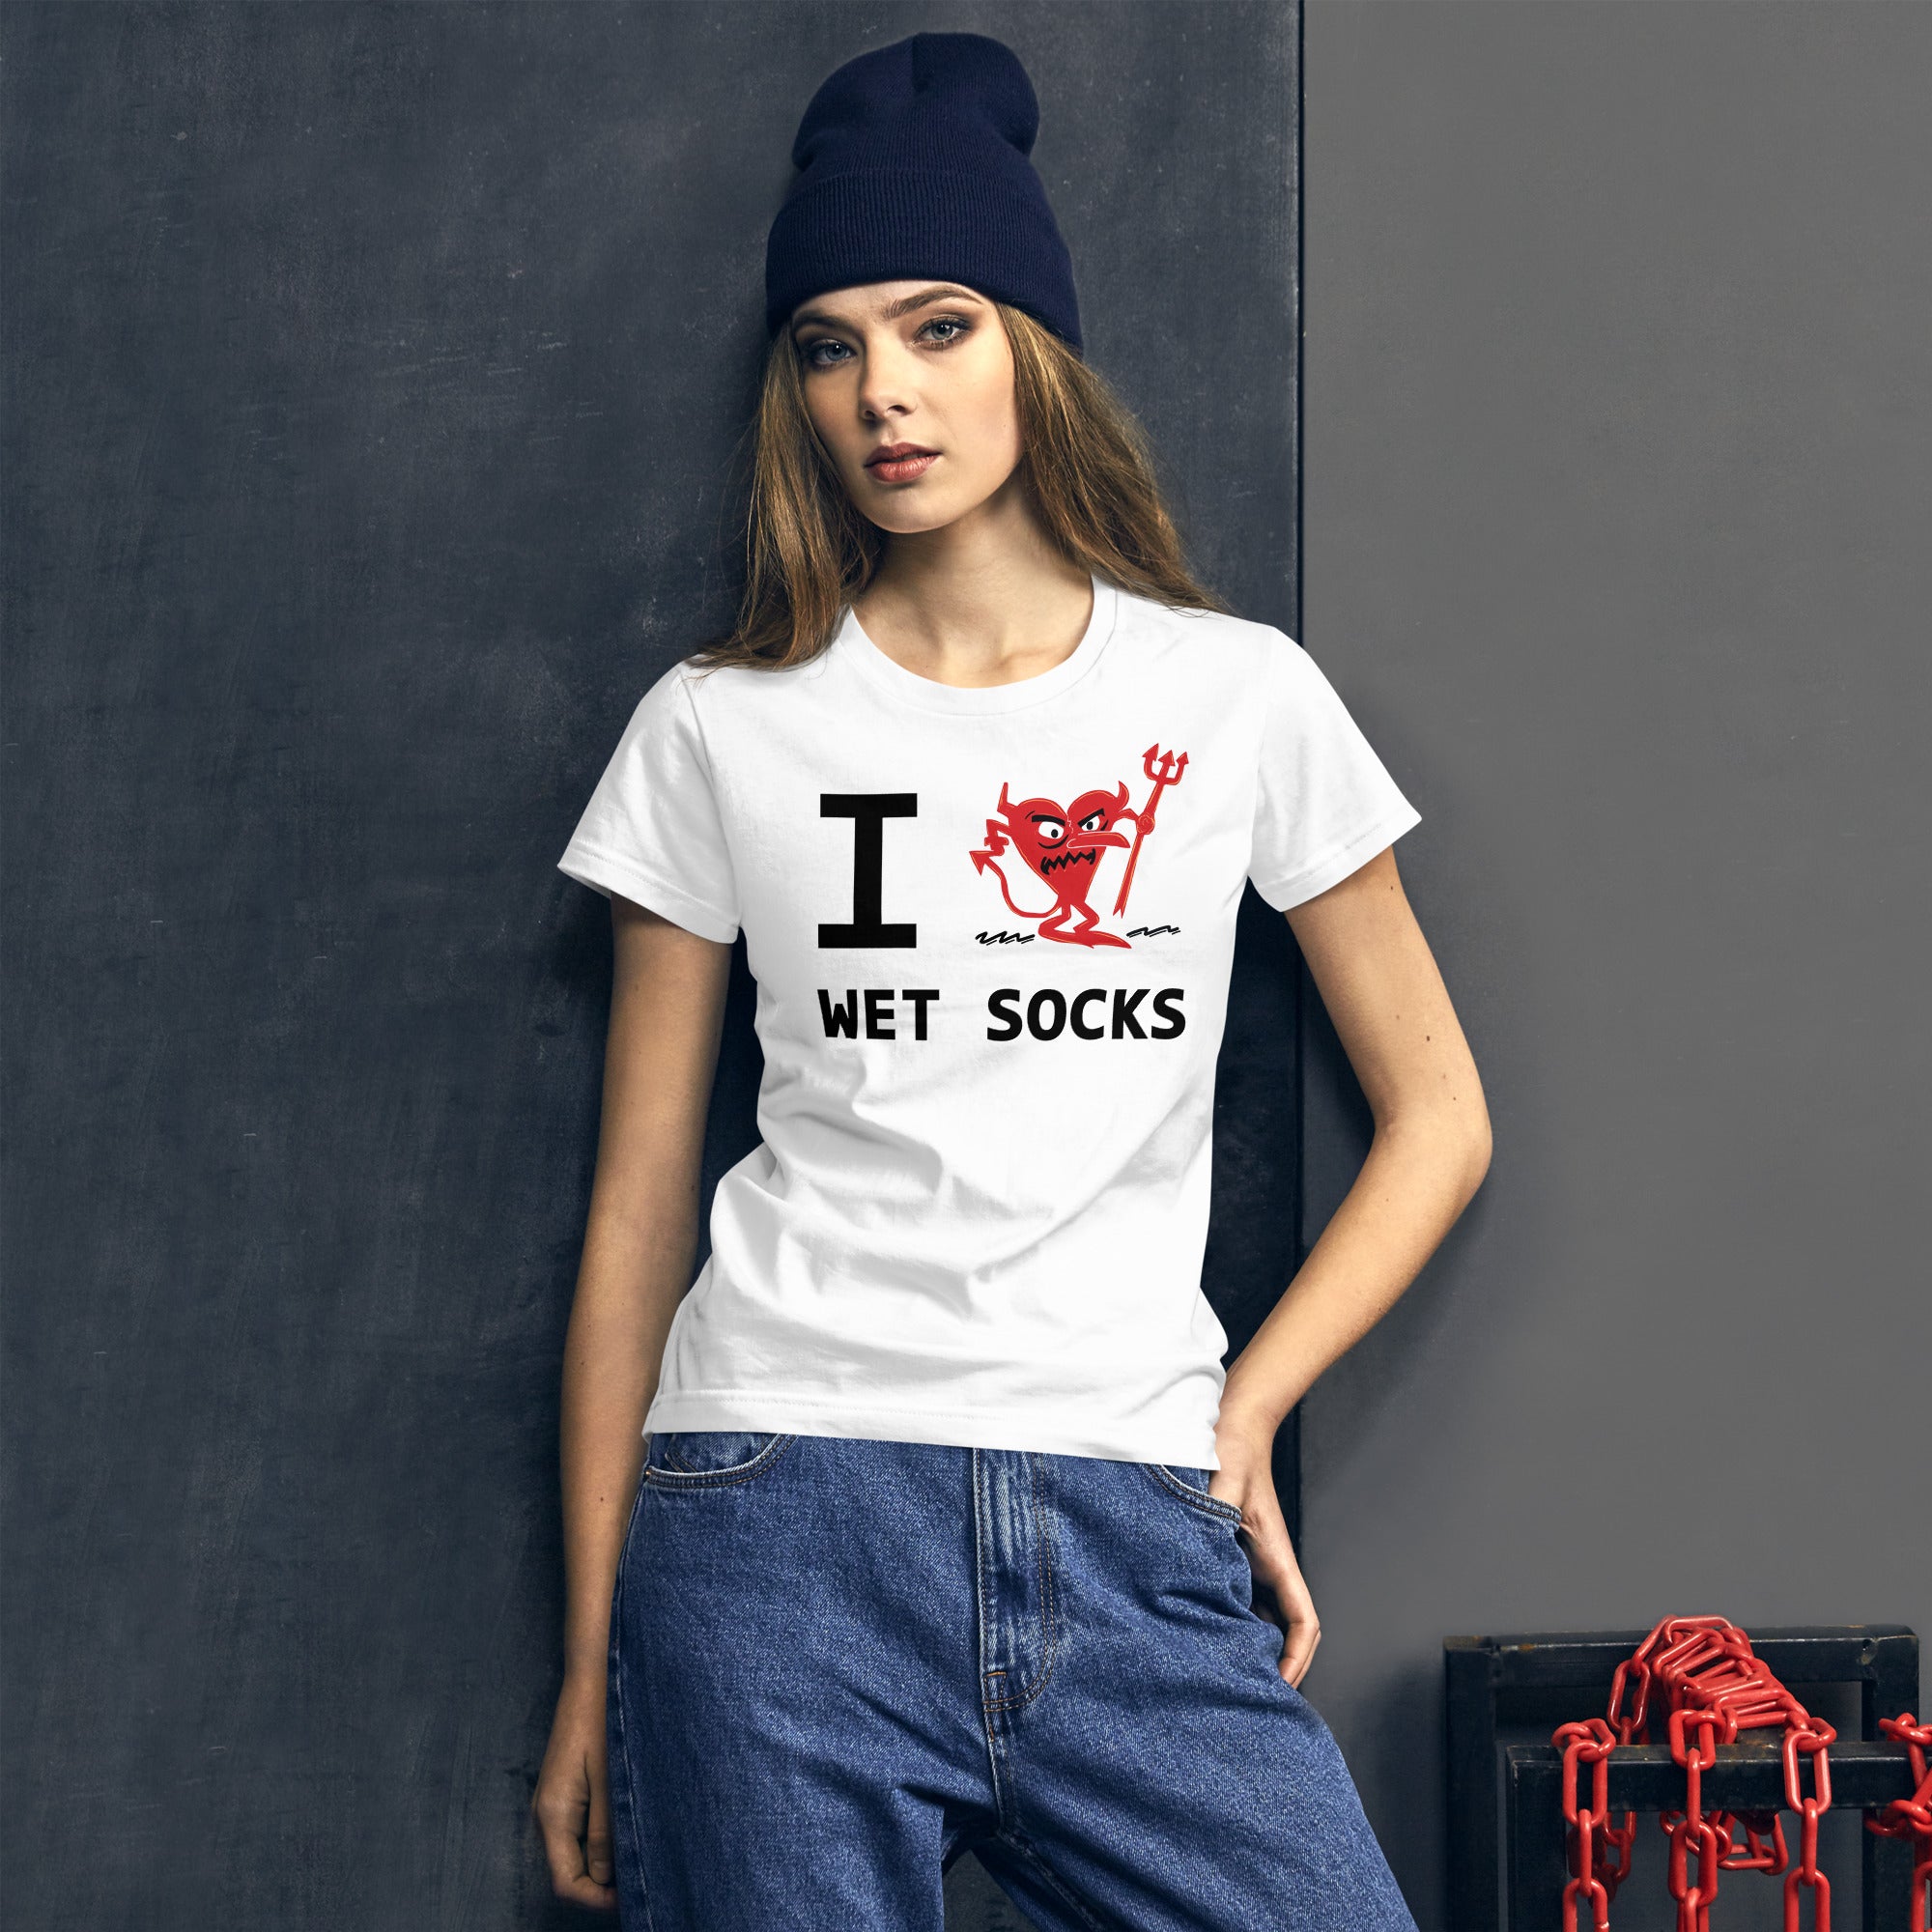 WET SOCKS Women's short sleeve t-shirt